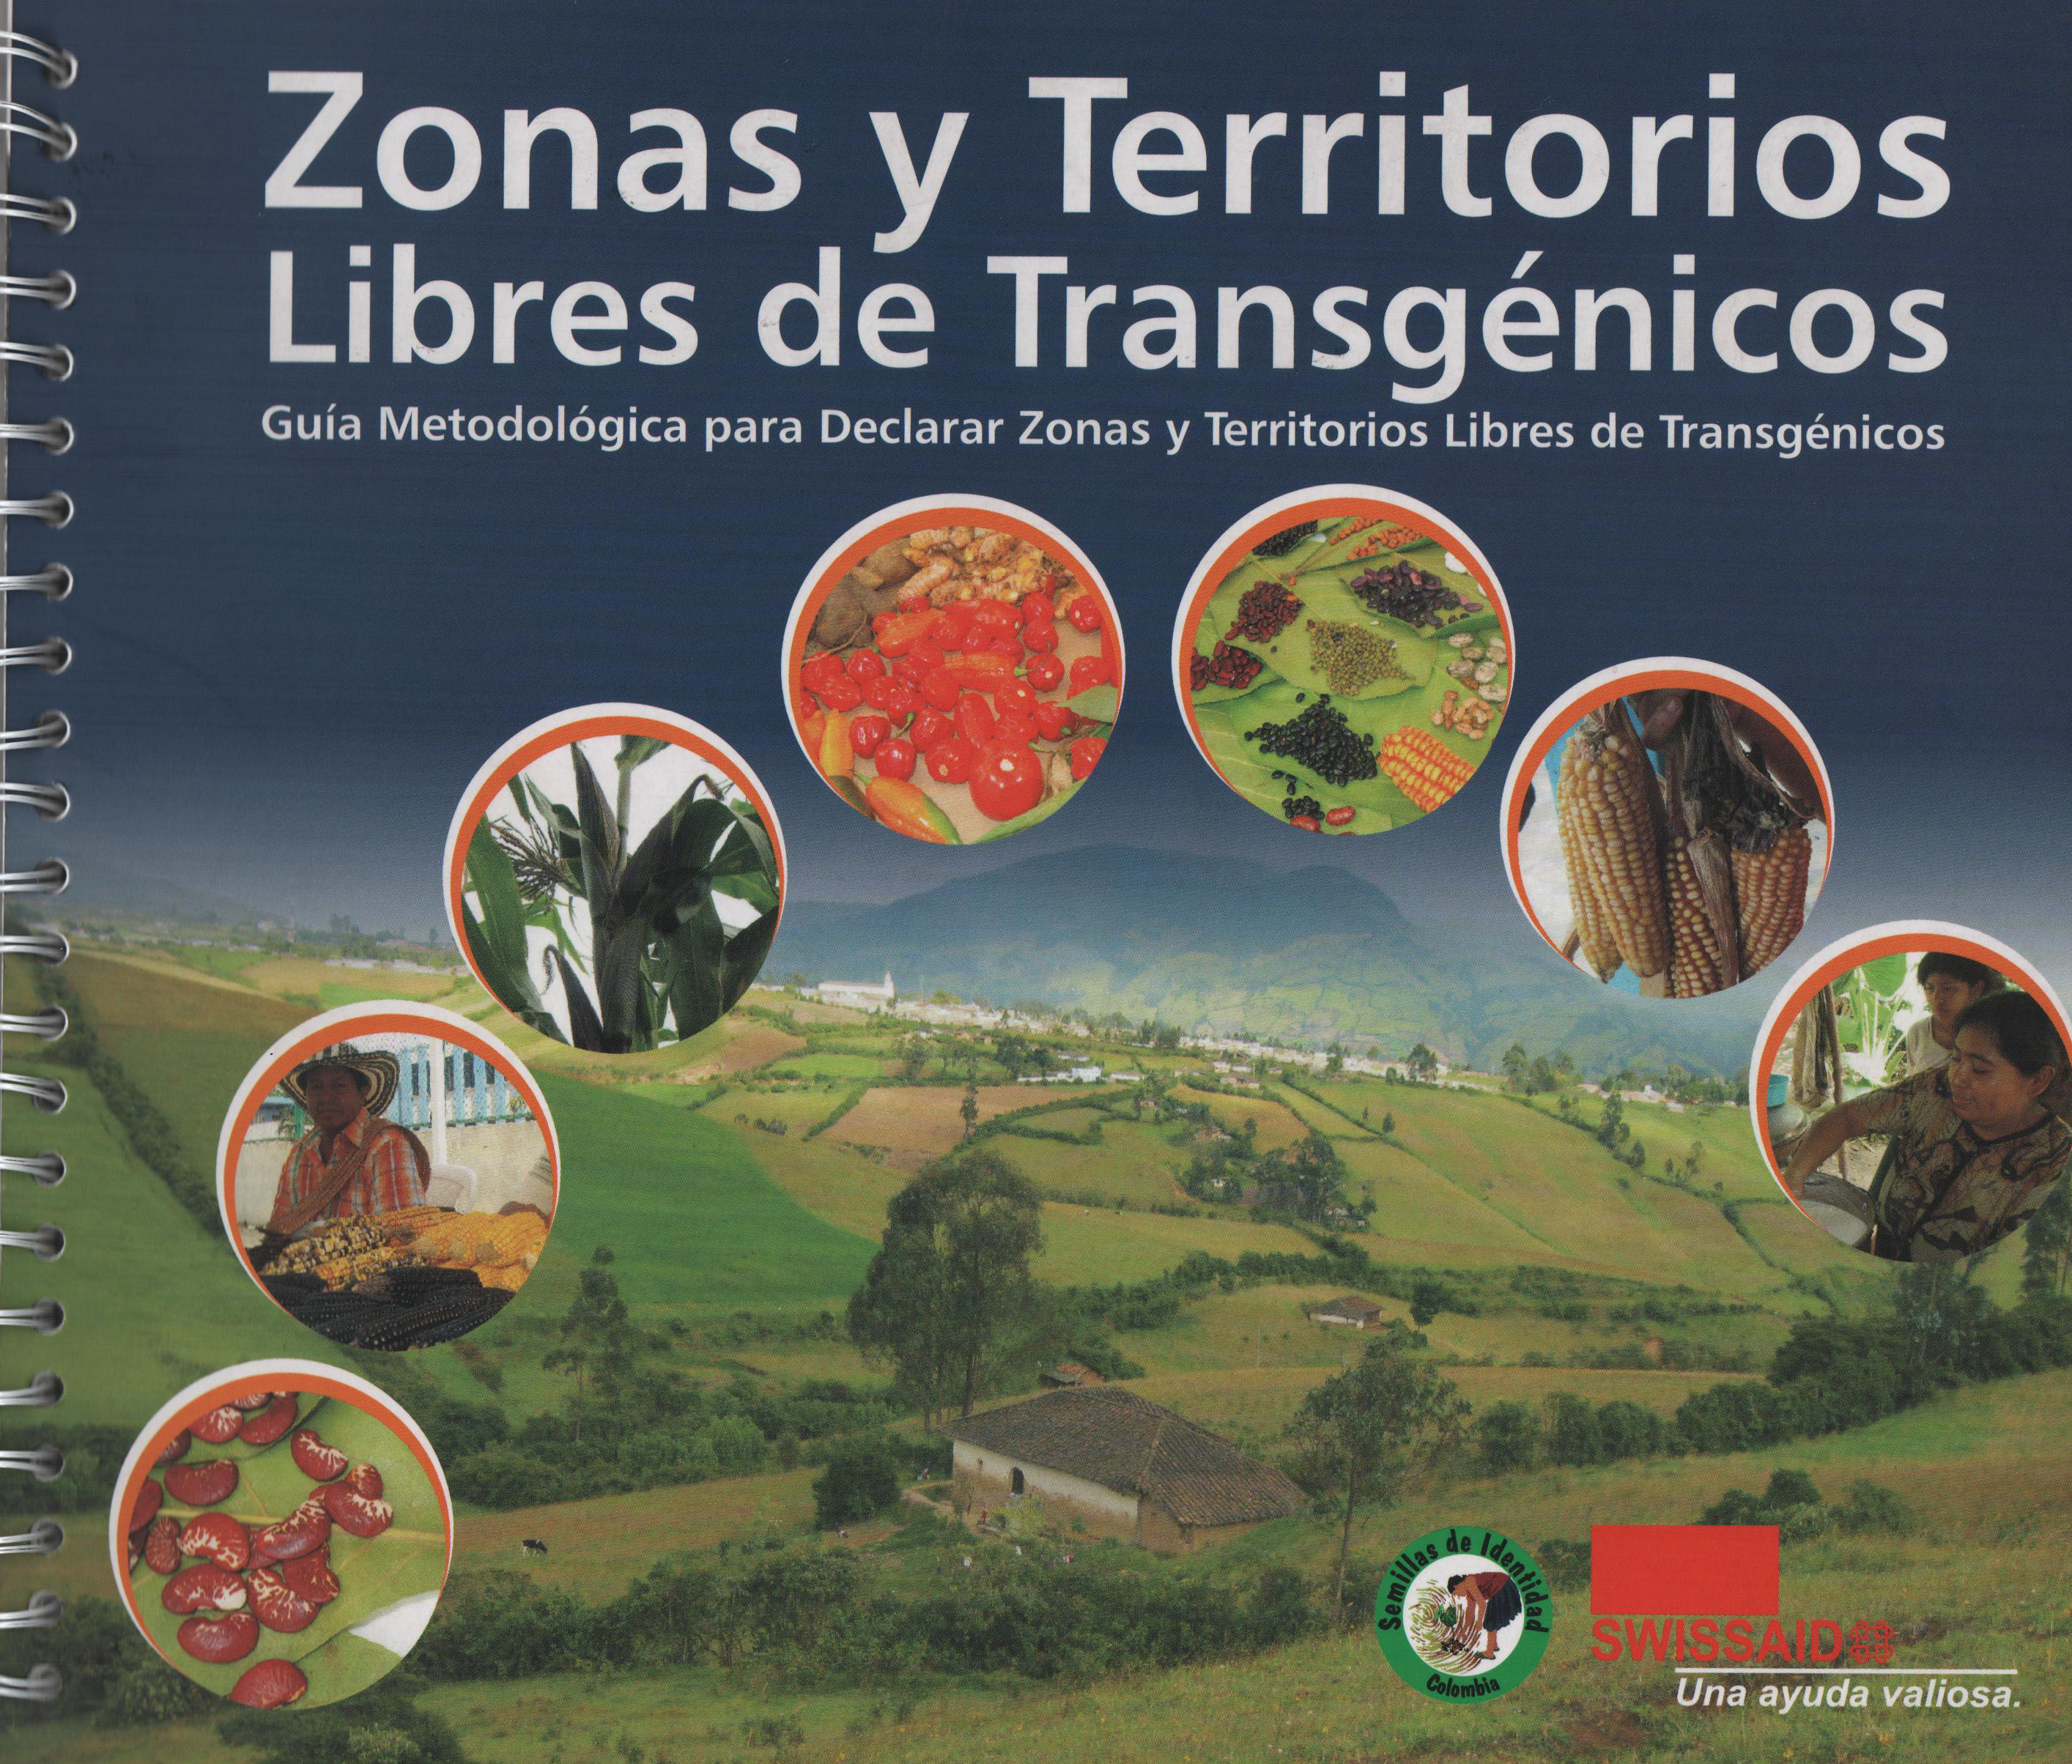 Gráfica alusiva a Guía metodólogica para declarar zonas y territorios libres de transgénicos